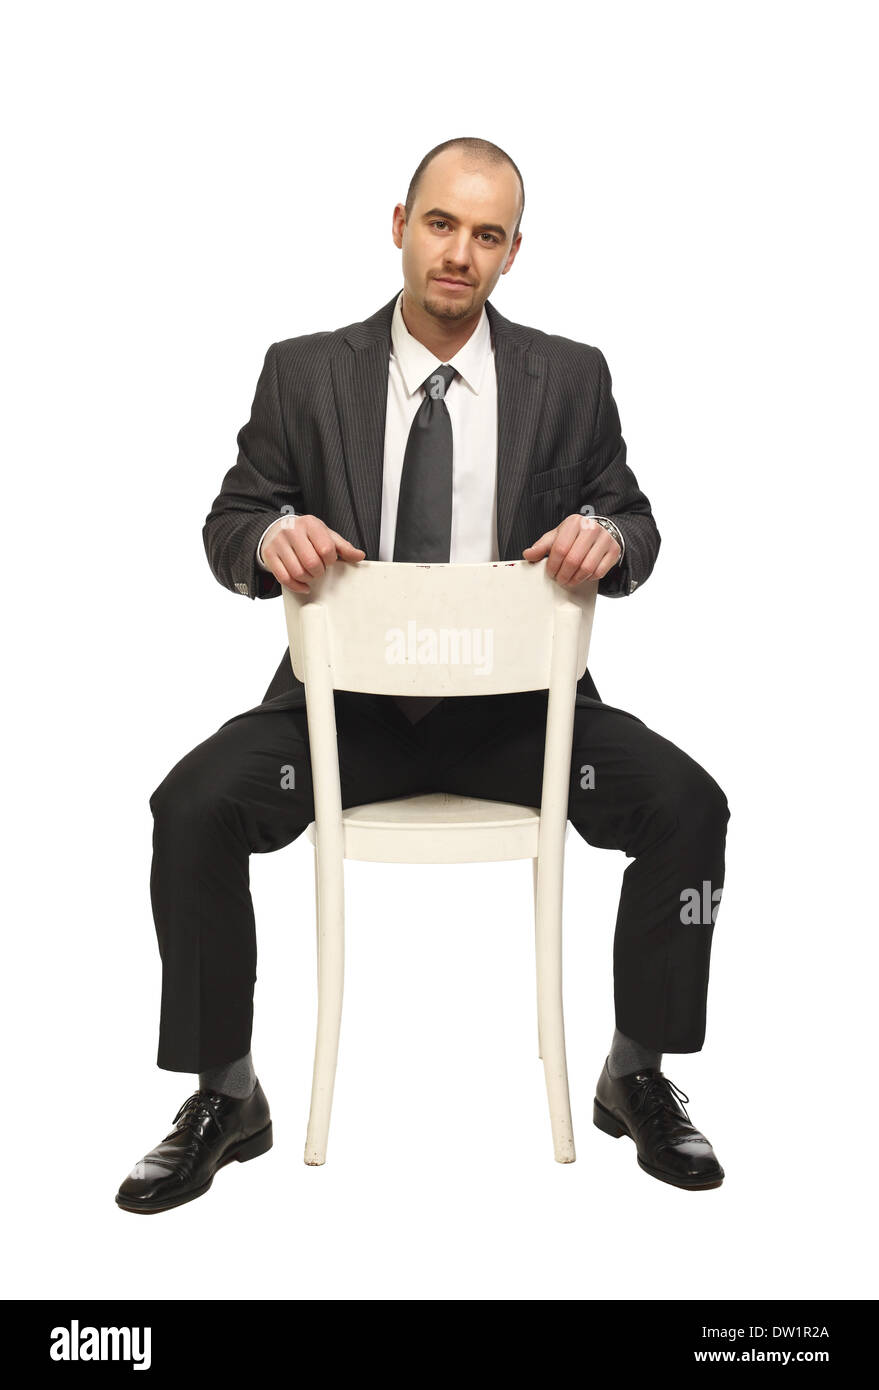 L'homme assis sur une chaise Photo Stock - Alamy